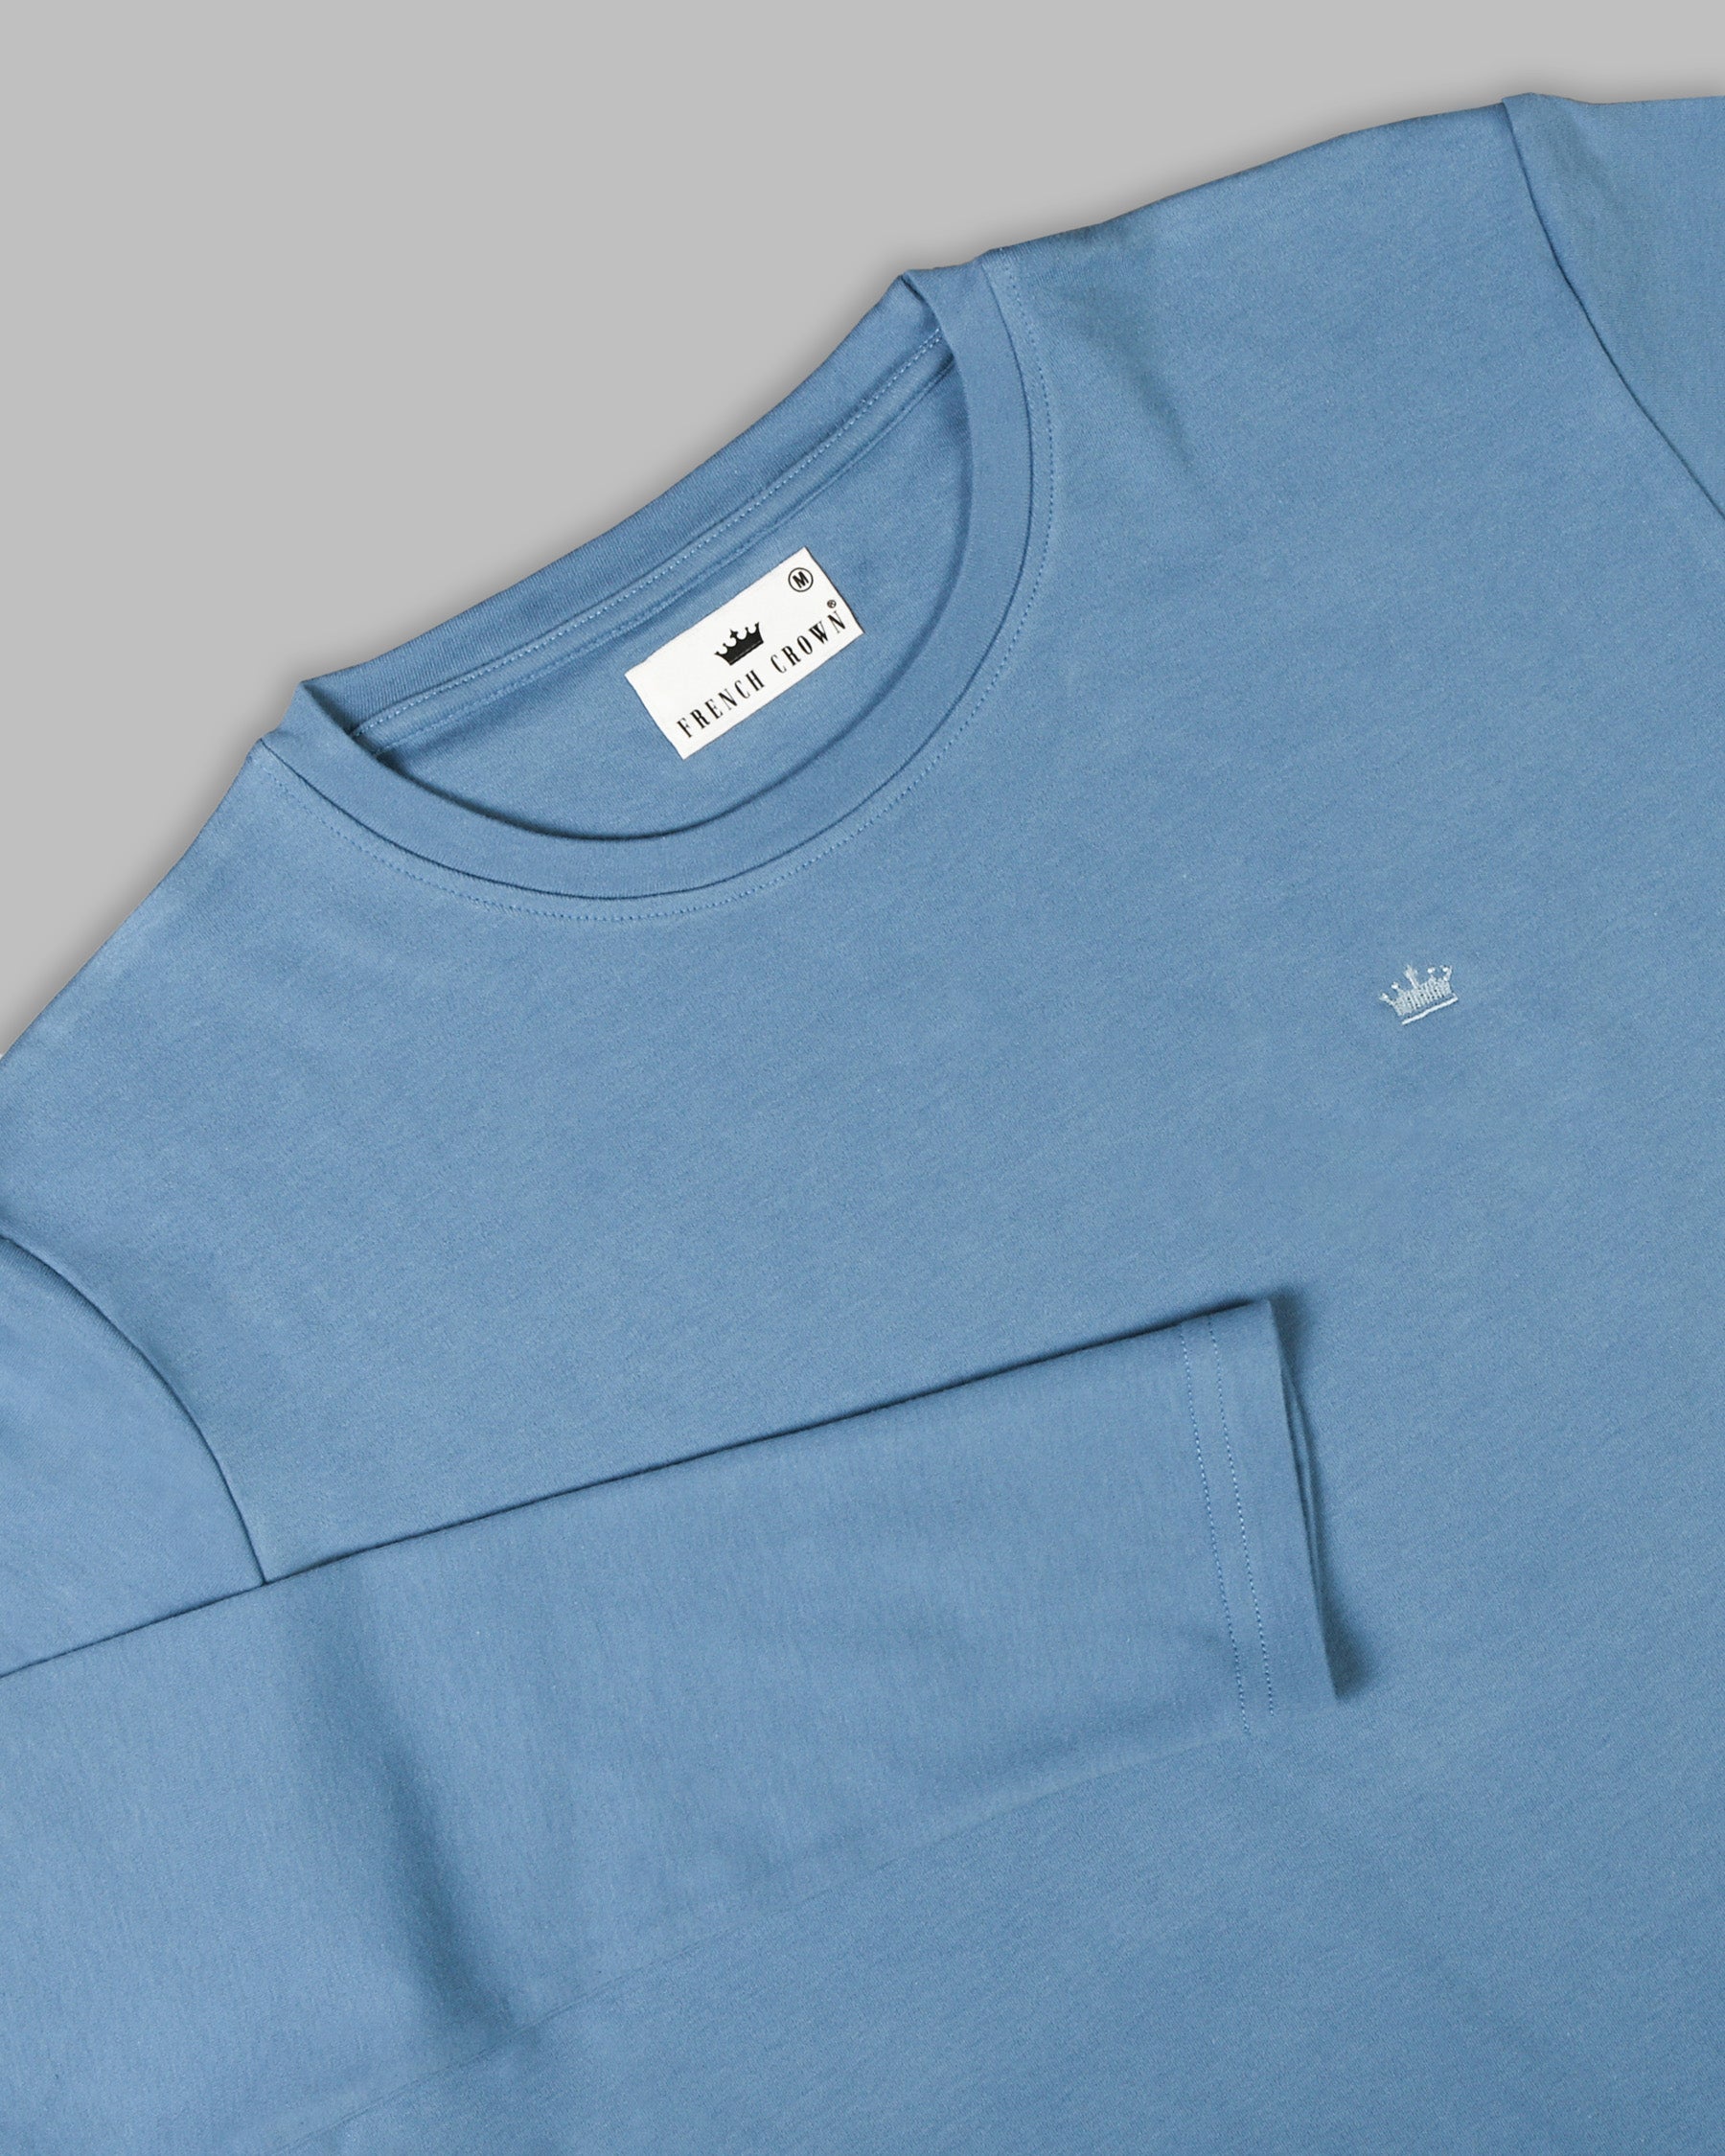 Cornflower Blue Full-Sleeve Super soft Organic Cotton Jersey T-shirt TS116-S, TS116-XXL, TS116-XL, TS116-M, TS116-L